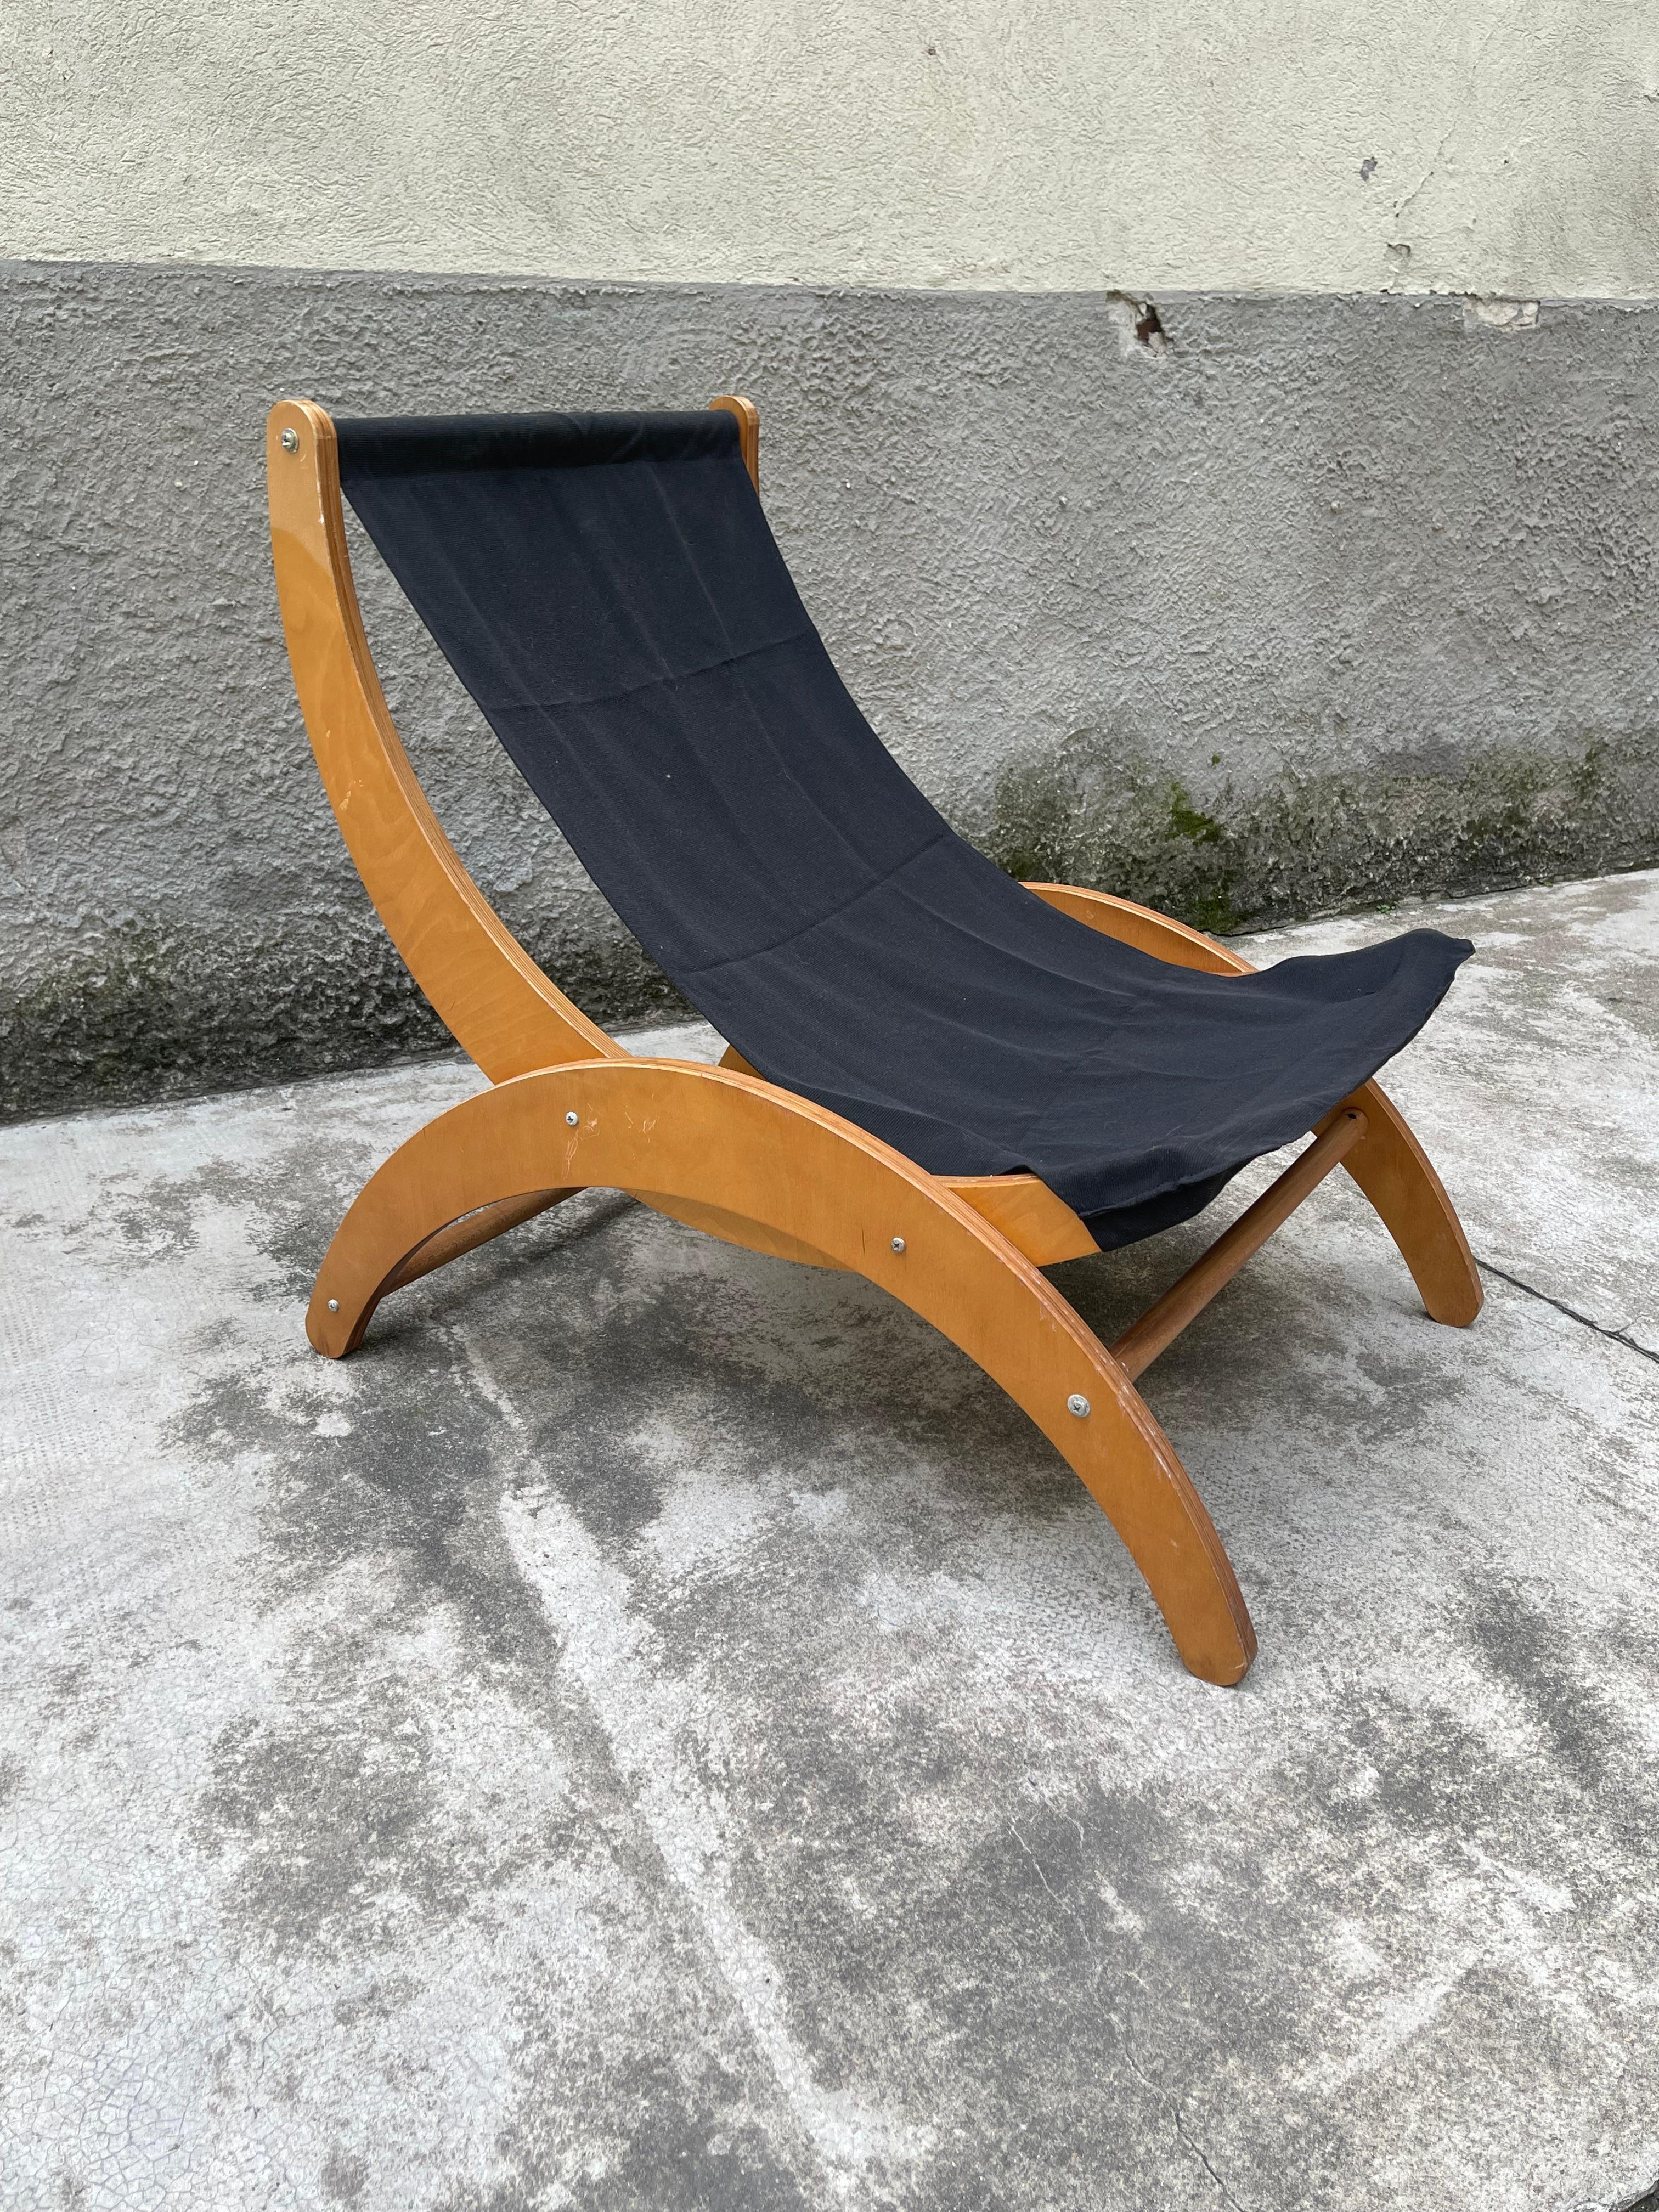 Fauteuil de salon Ingmar Relling en tissu noir, années 1960, Norvège  
Découvrez l'attrait intemporel du design du milieu du siècle avec cette chaise longue emblématique d'Ingmar Relling. 
Construit dans les années 1960, cet exemple de design